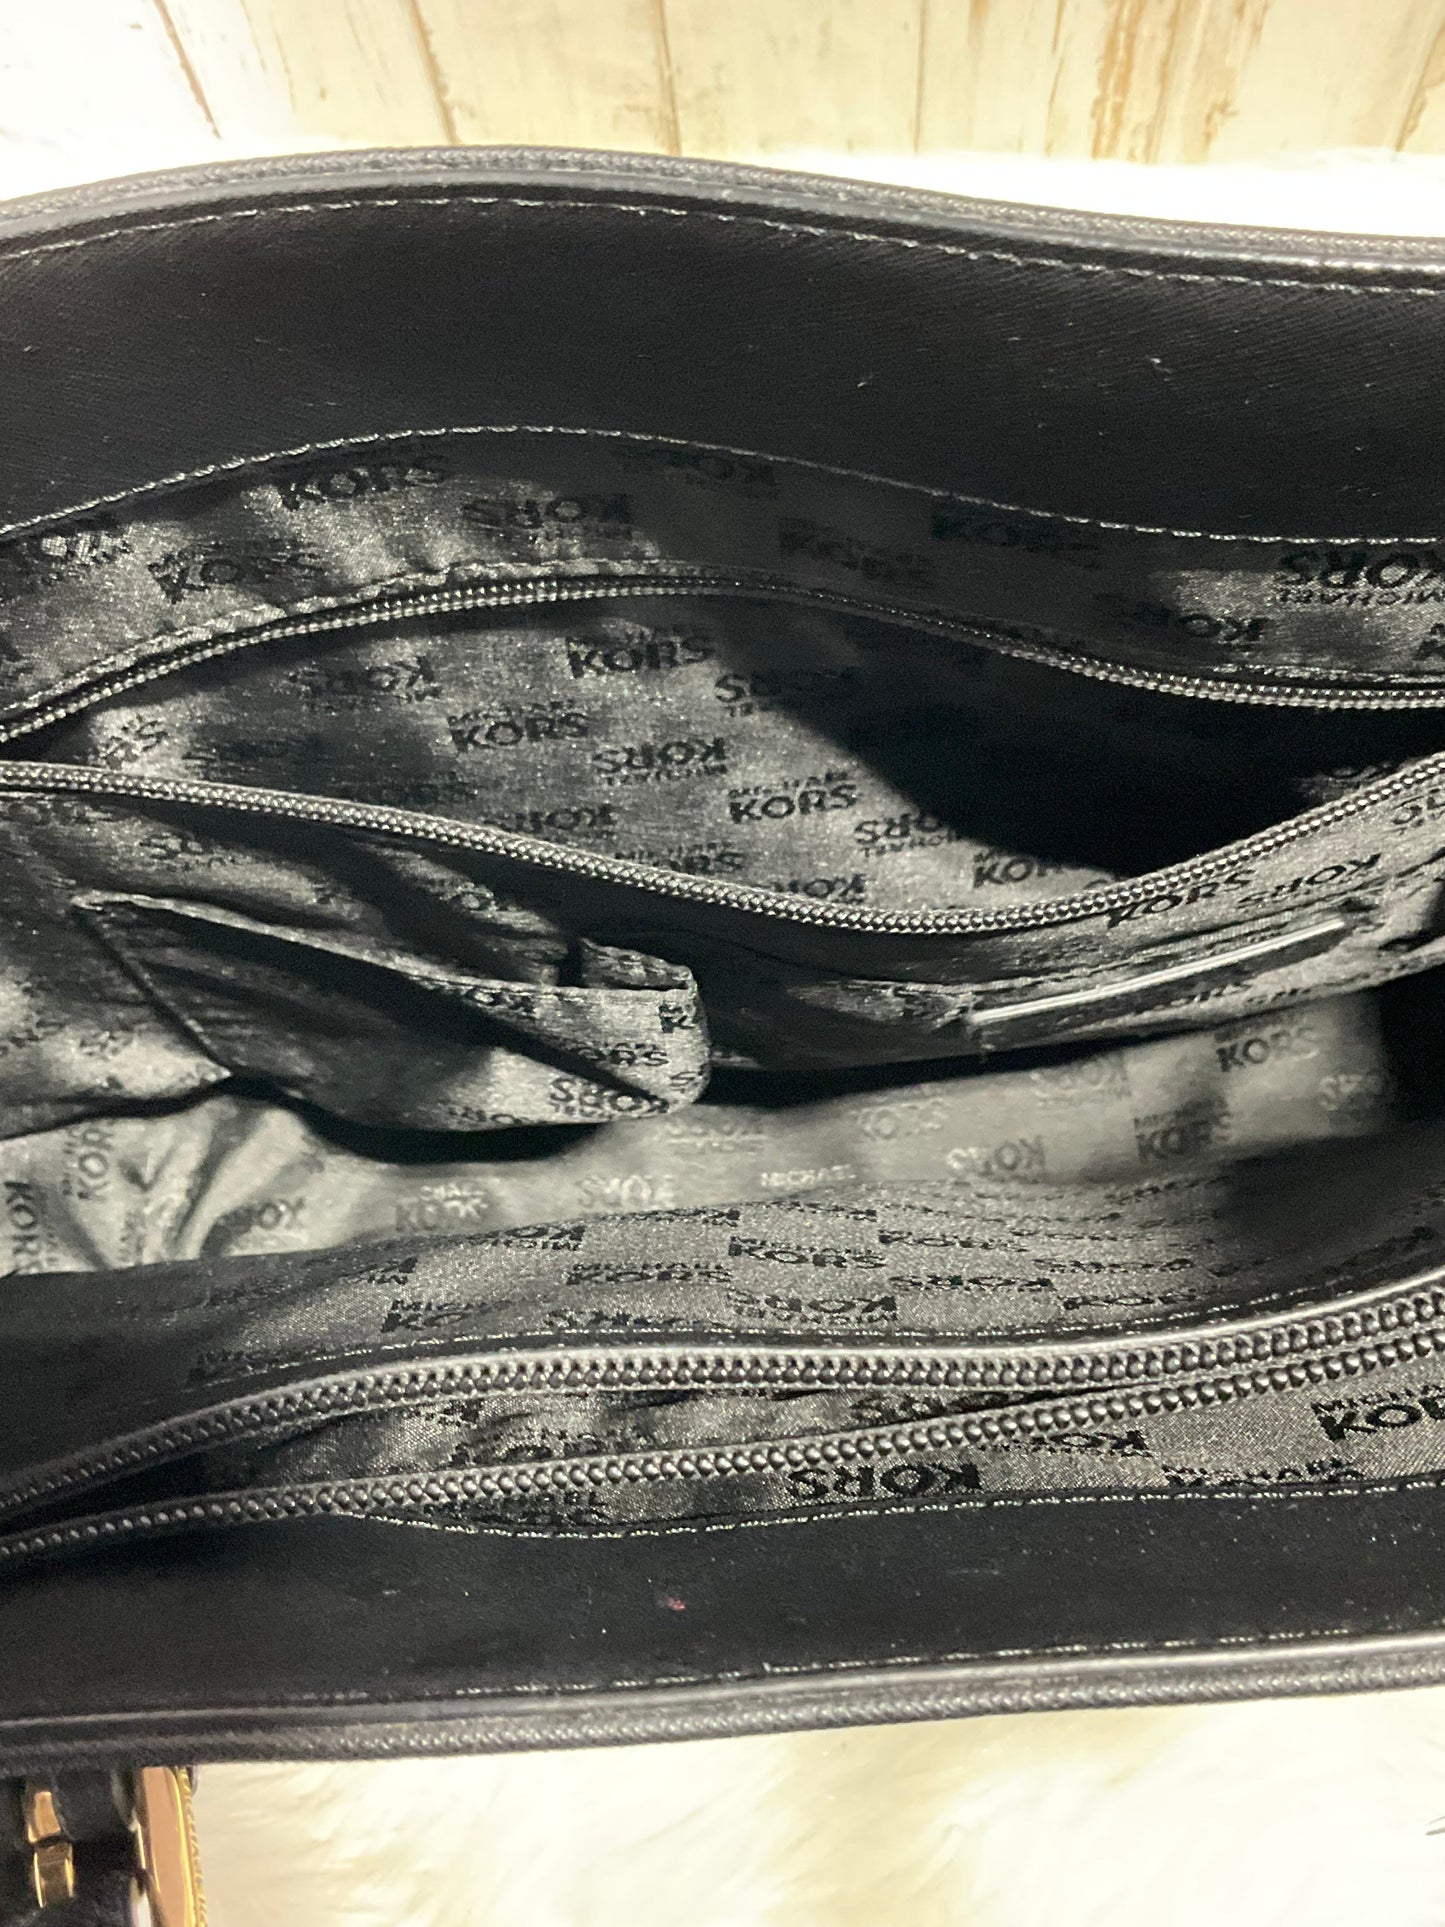 Handbag By Michael Kors  Size: Small